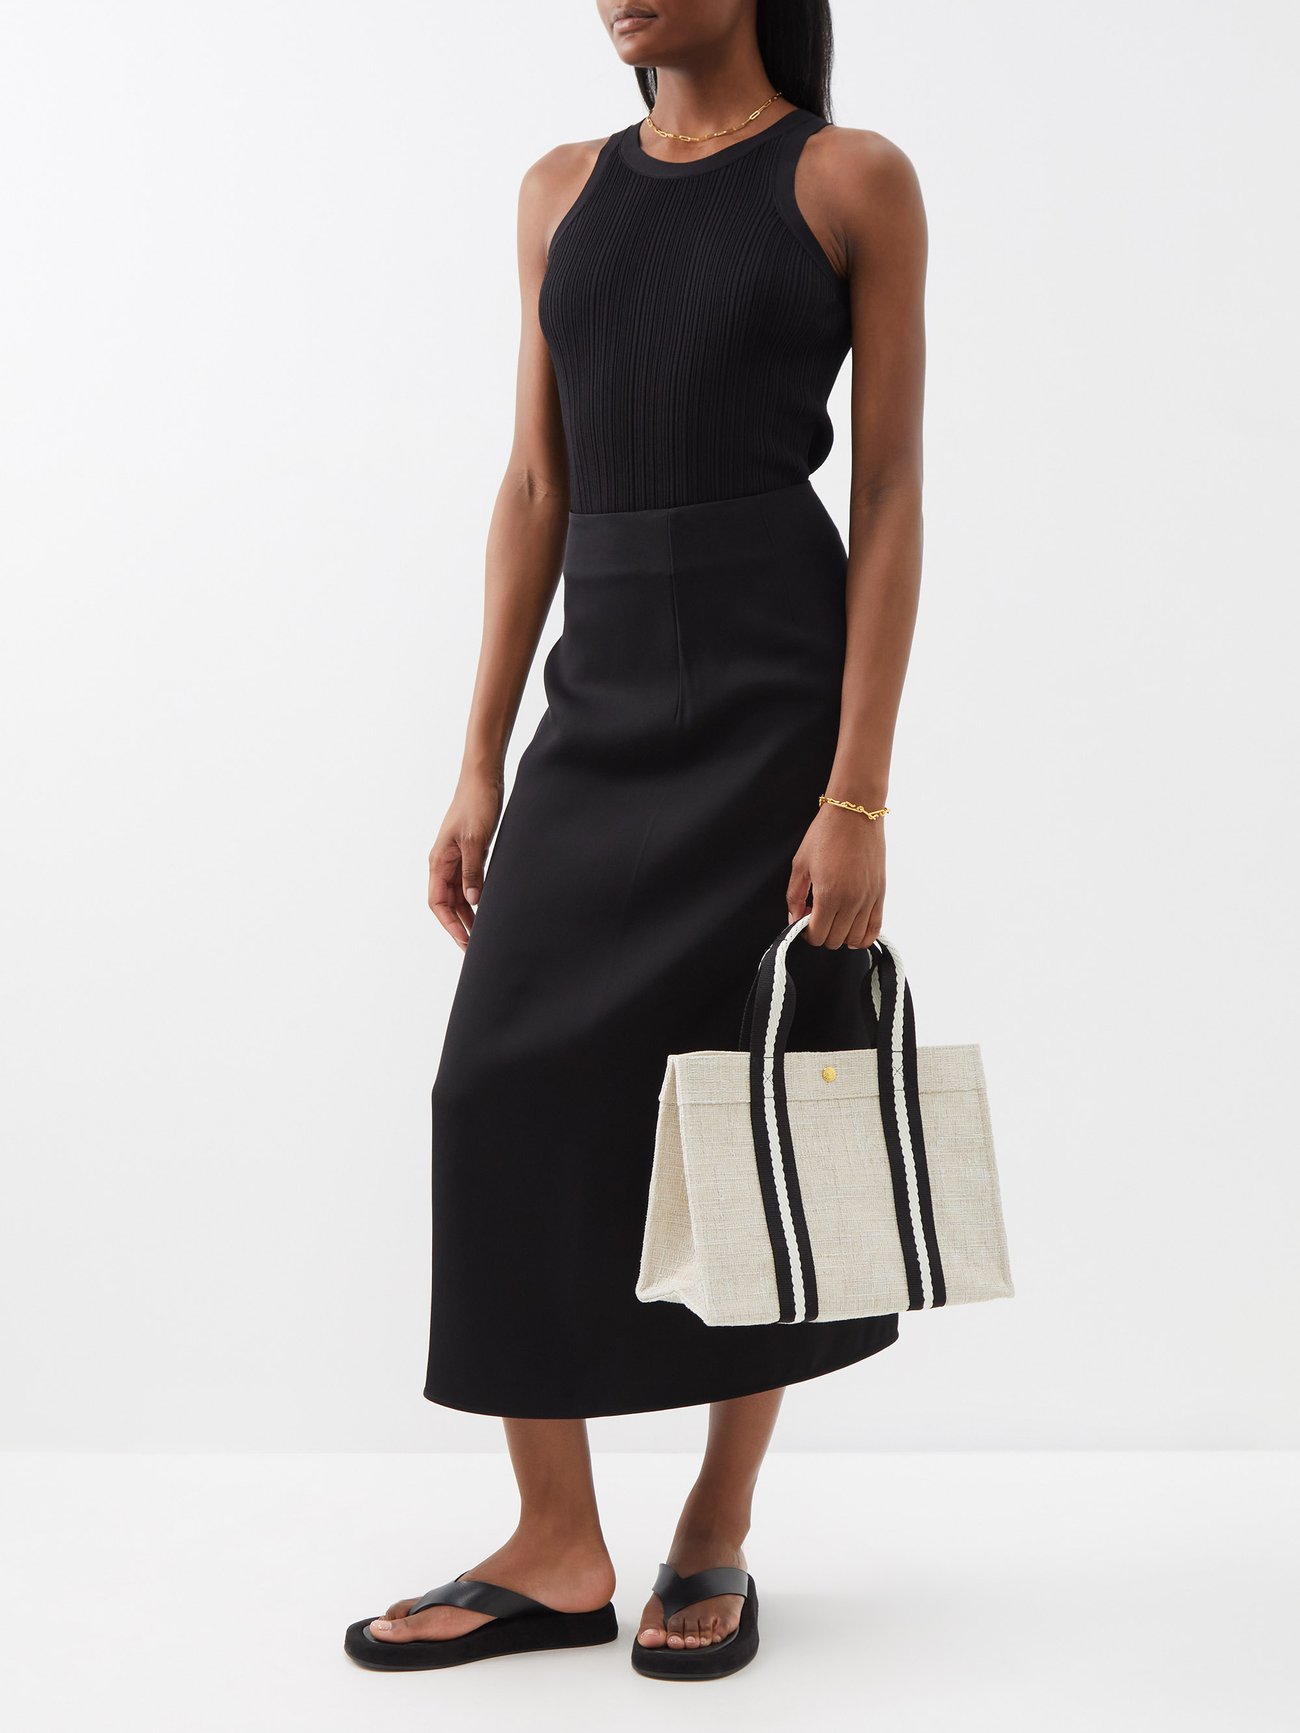 RUE DE VERNEUIL Francoise Shoulder Bag in Grey Tweed - ShopStyle